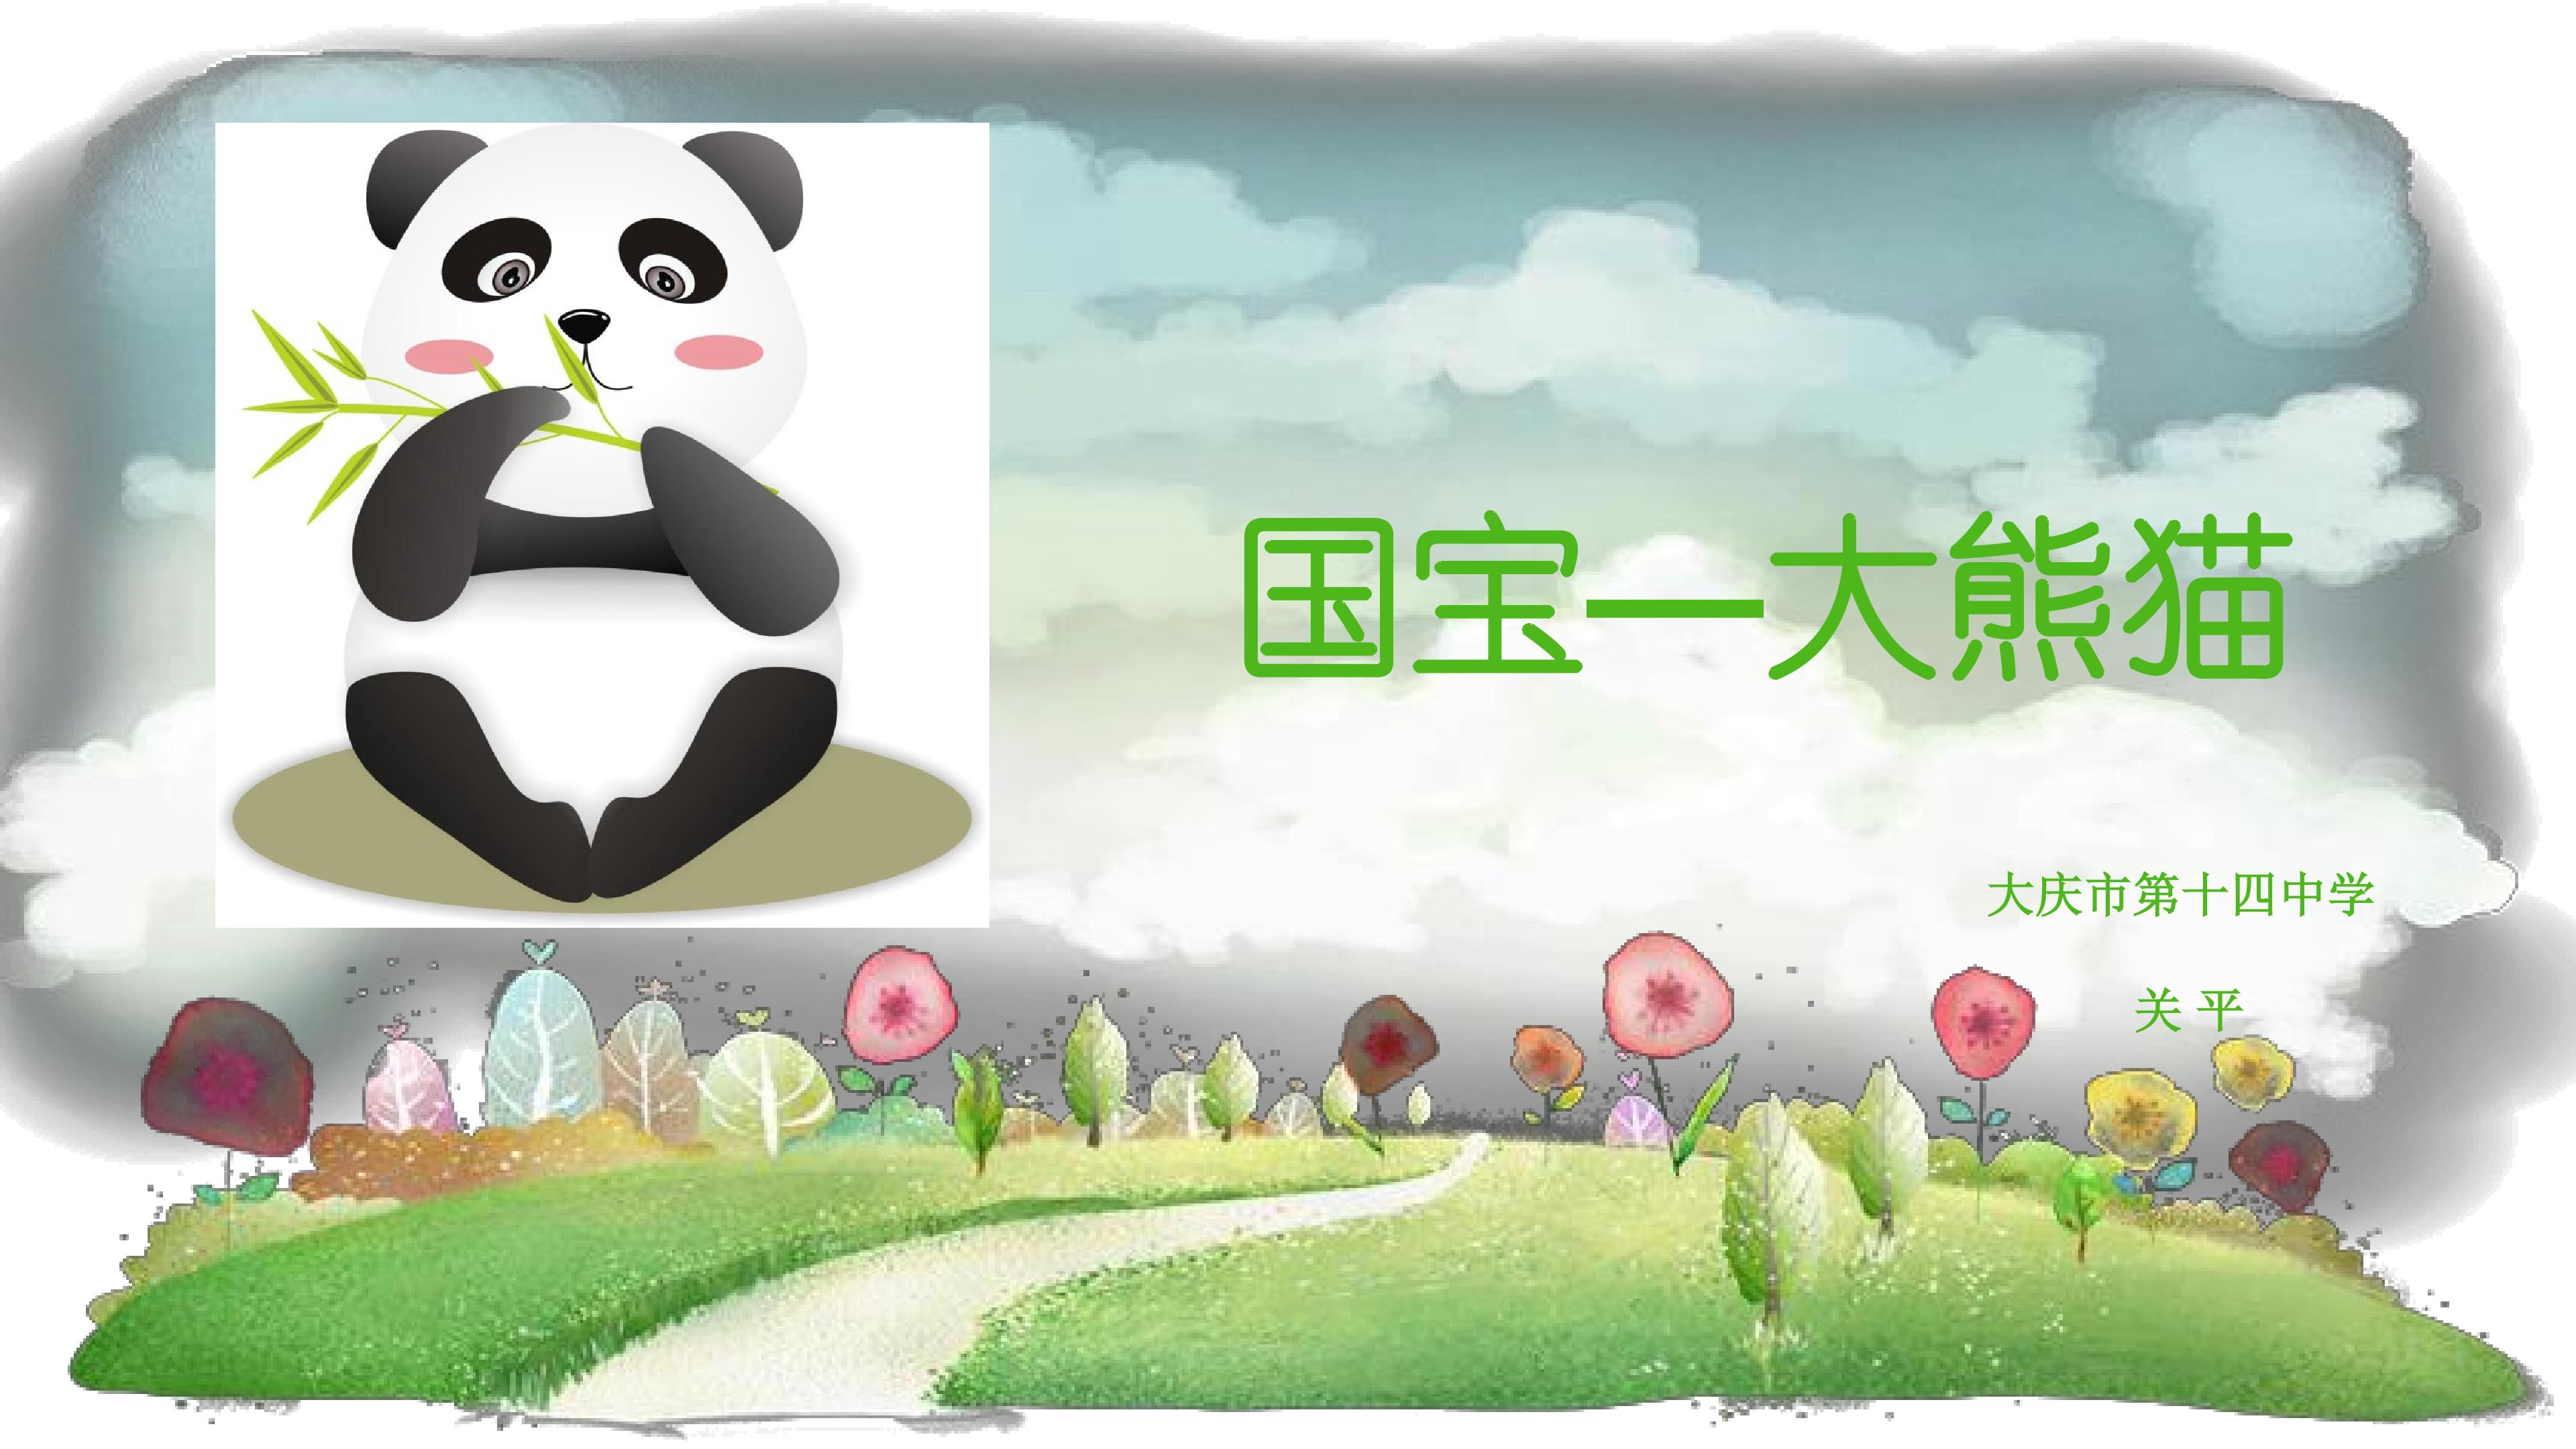 国宝--大熊猫